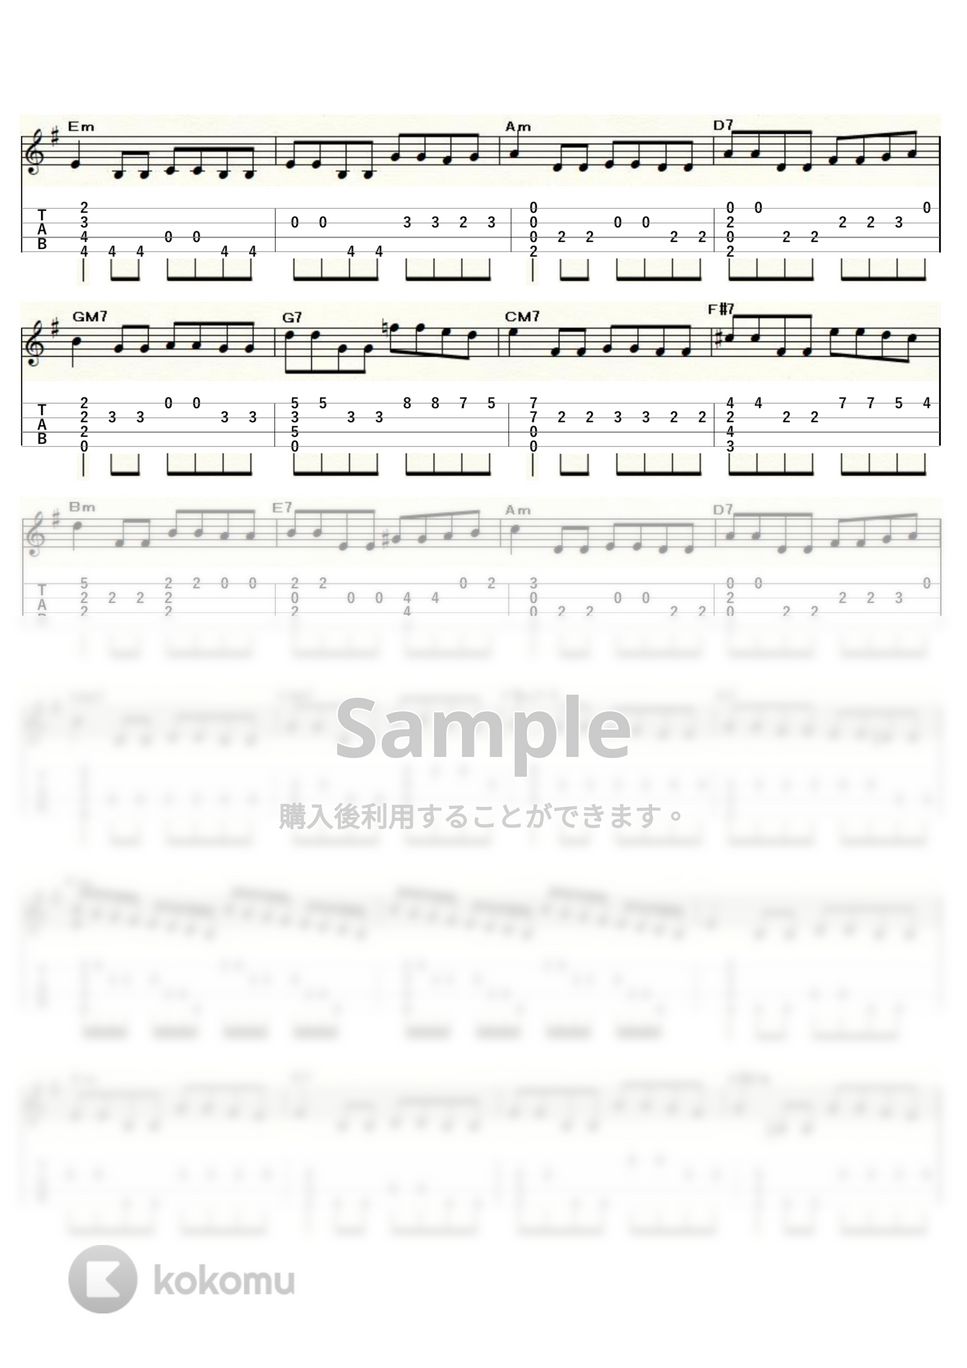 華麗なる賭け - 風のささやき (ｳｸﾚﾚｿﾛ / Low-G / 中級) by ukulelepapa